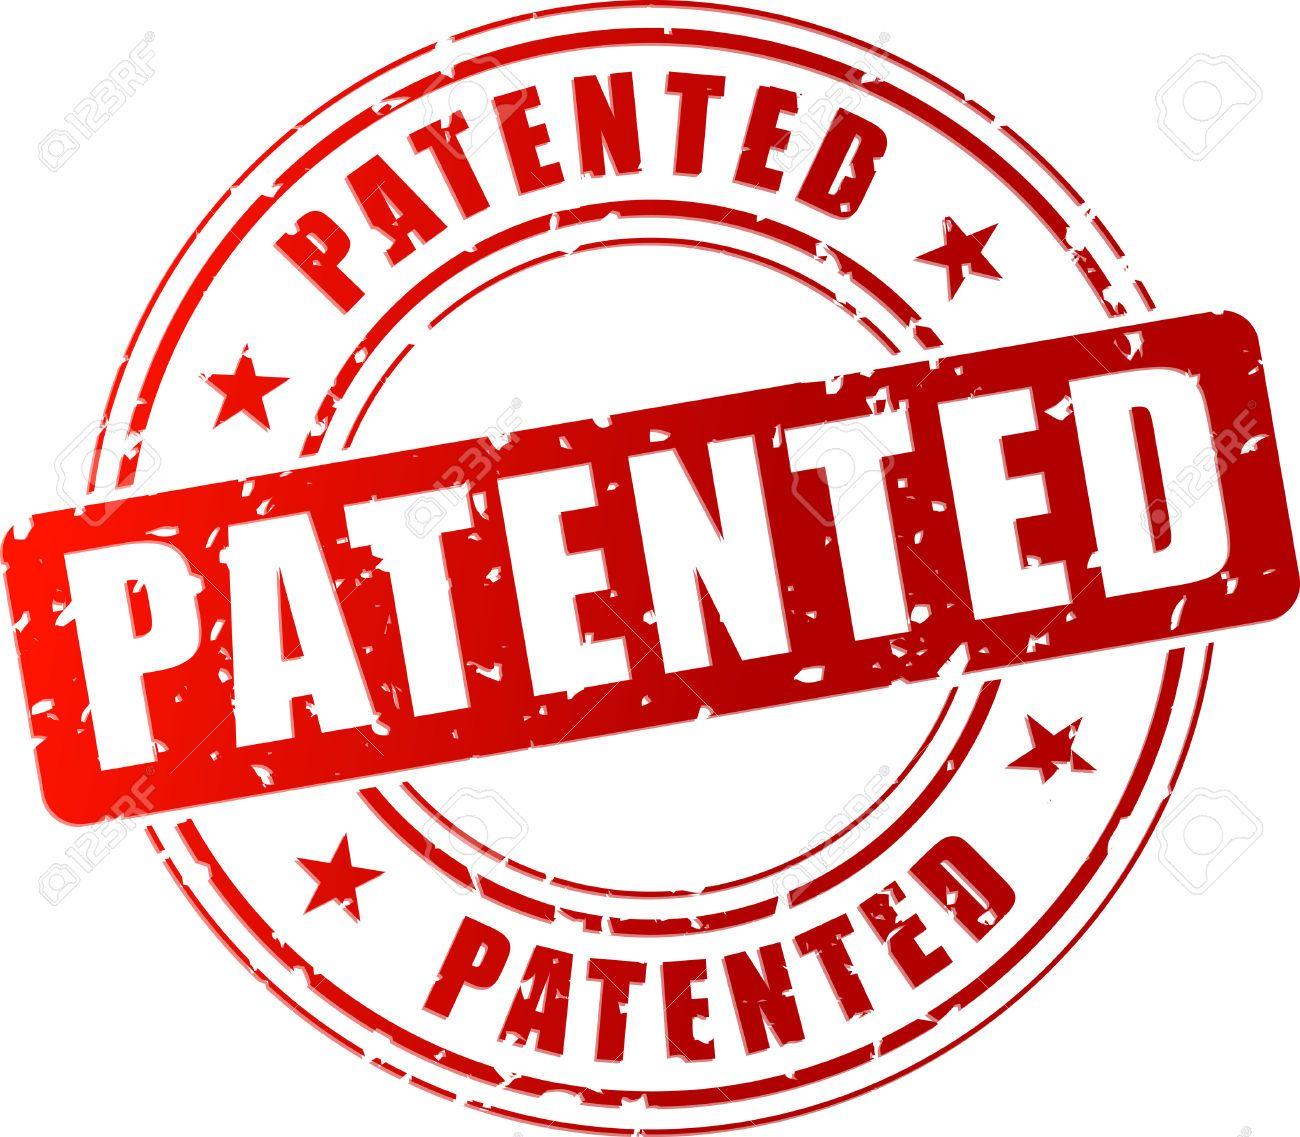 Patent Logo - Patent Logos